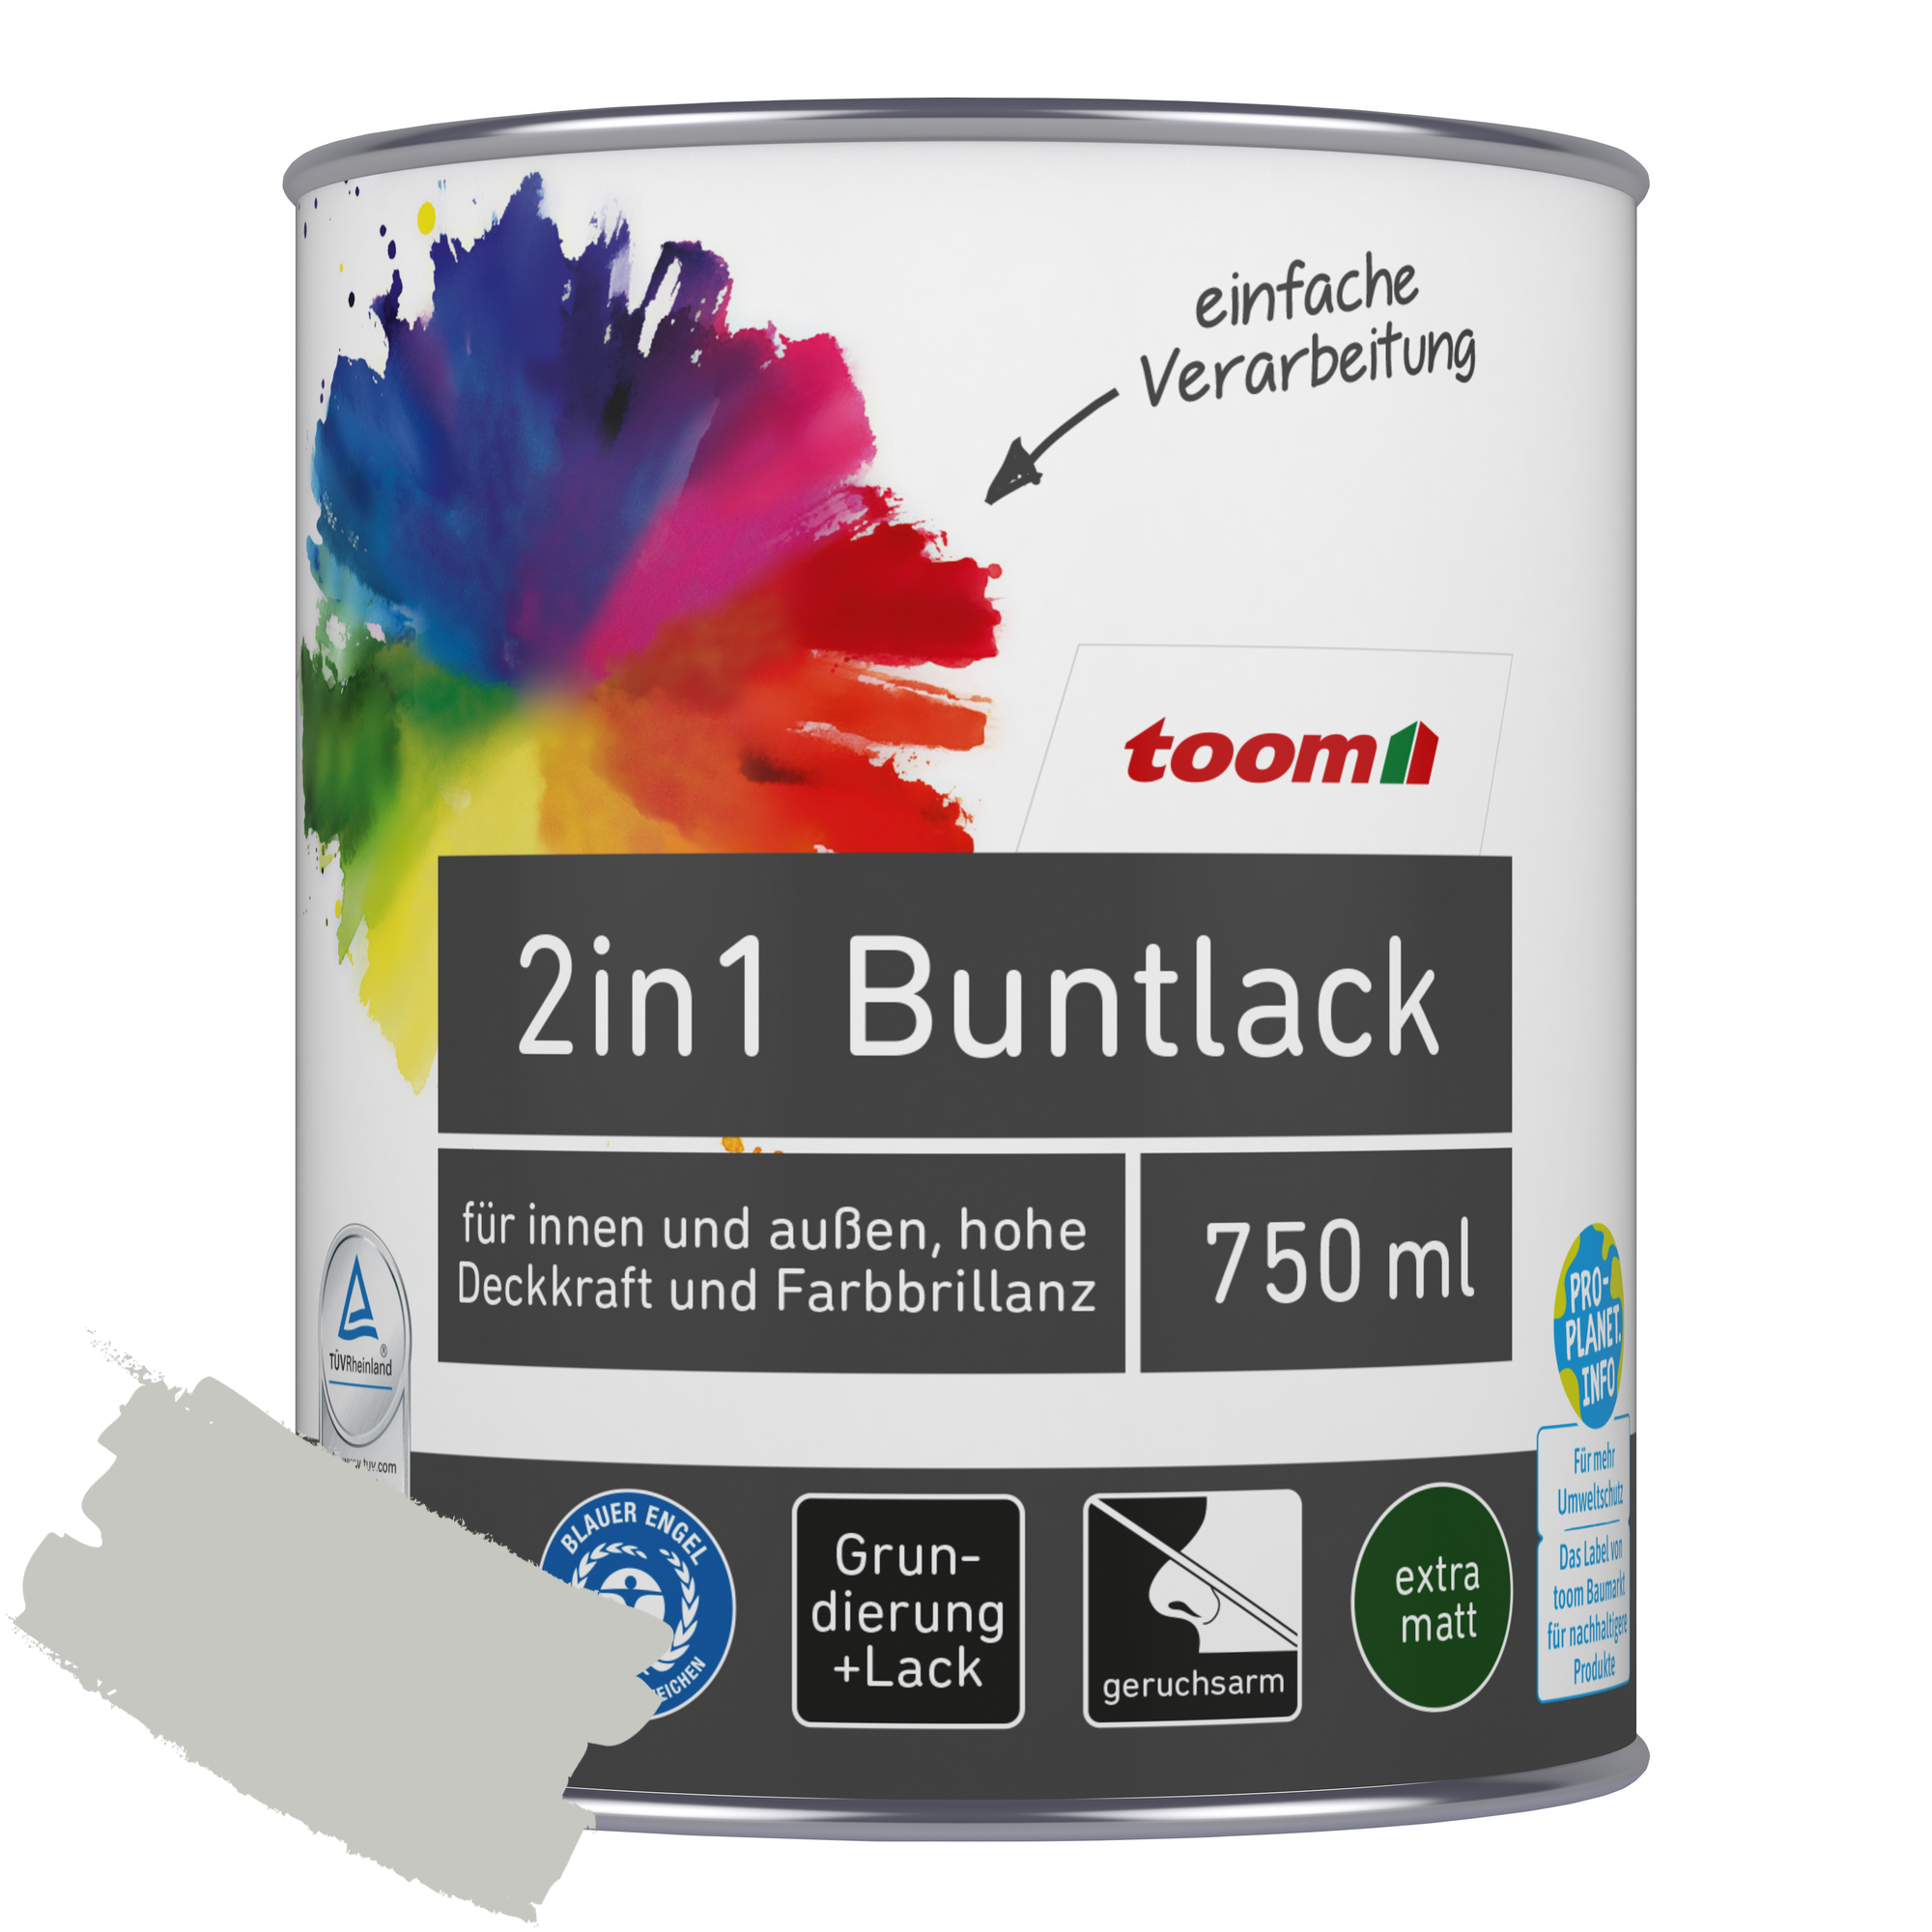 2in1 Buntlack 'Mondschein' lichtgrau matt 750 ml + product picture